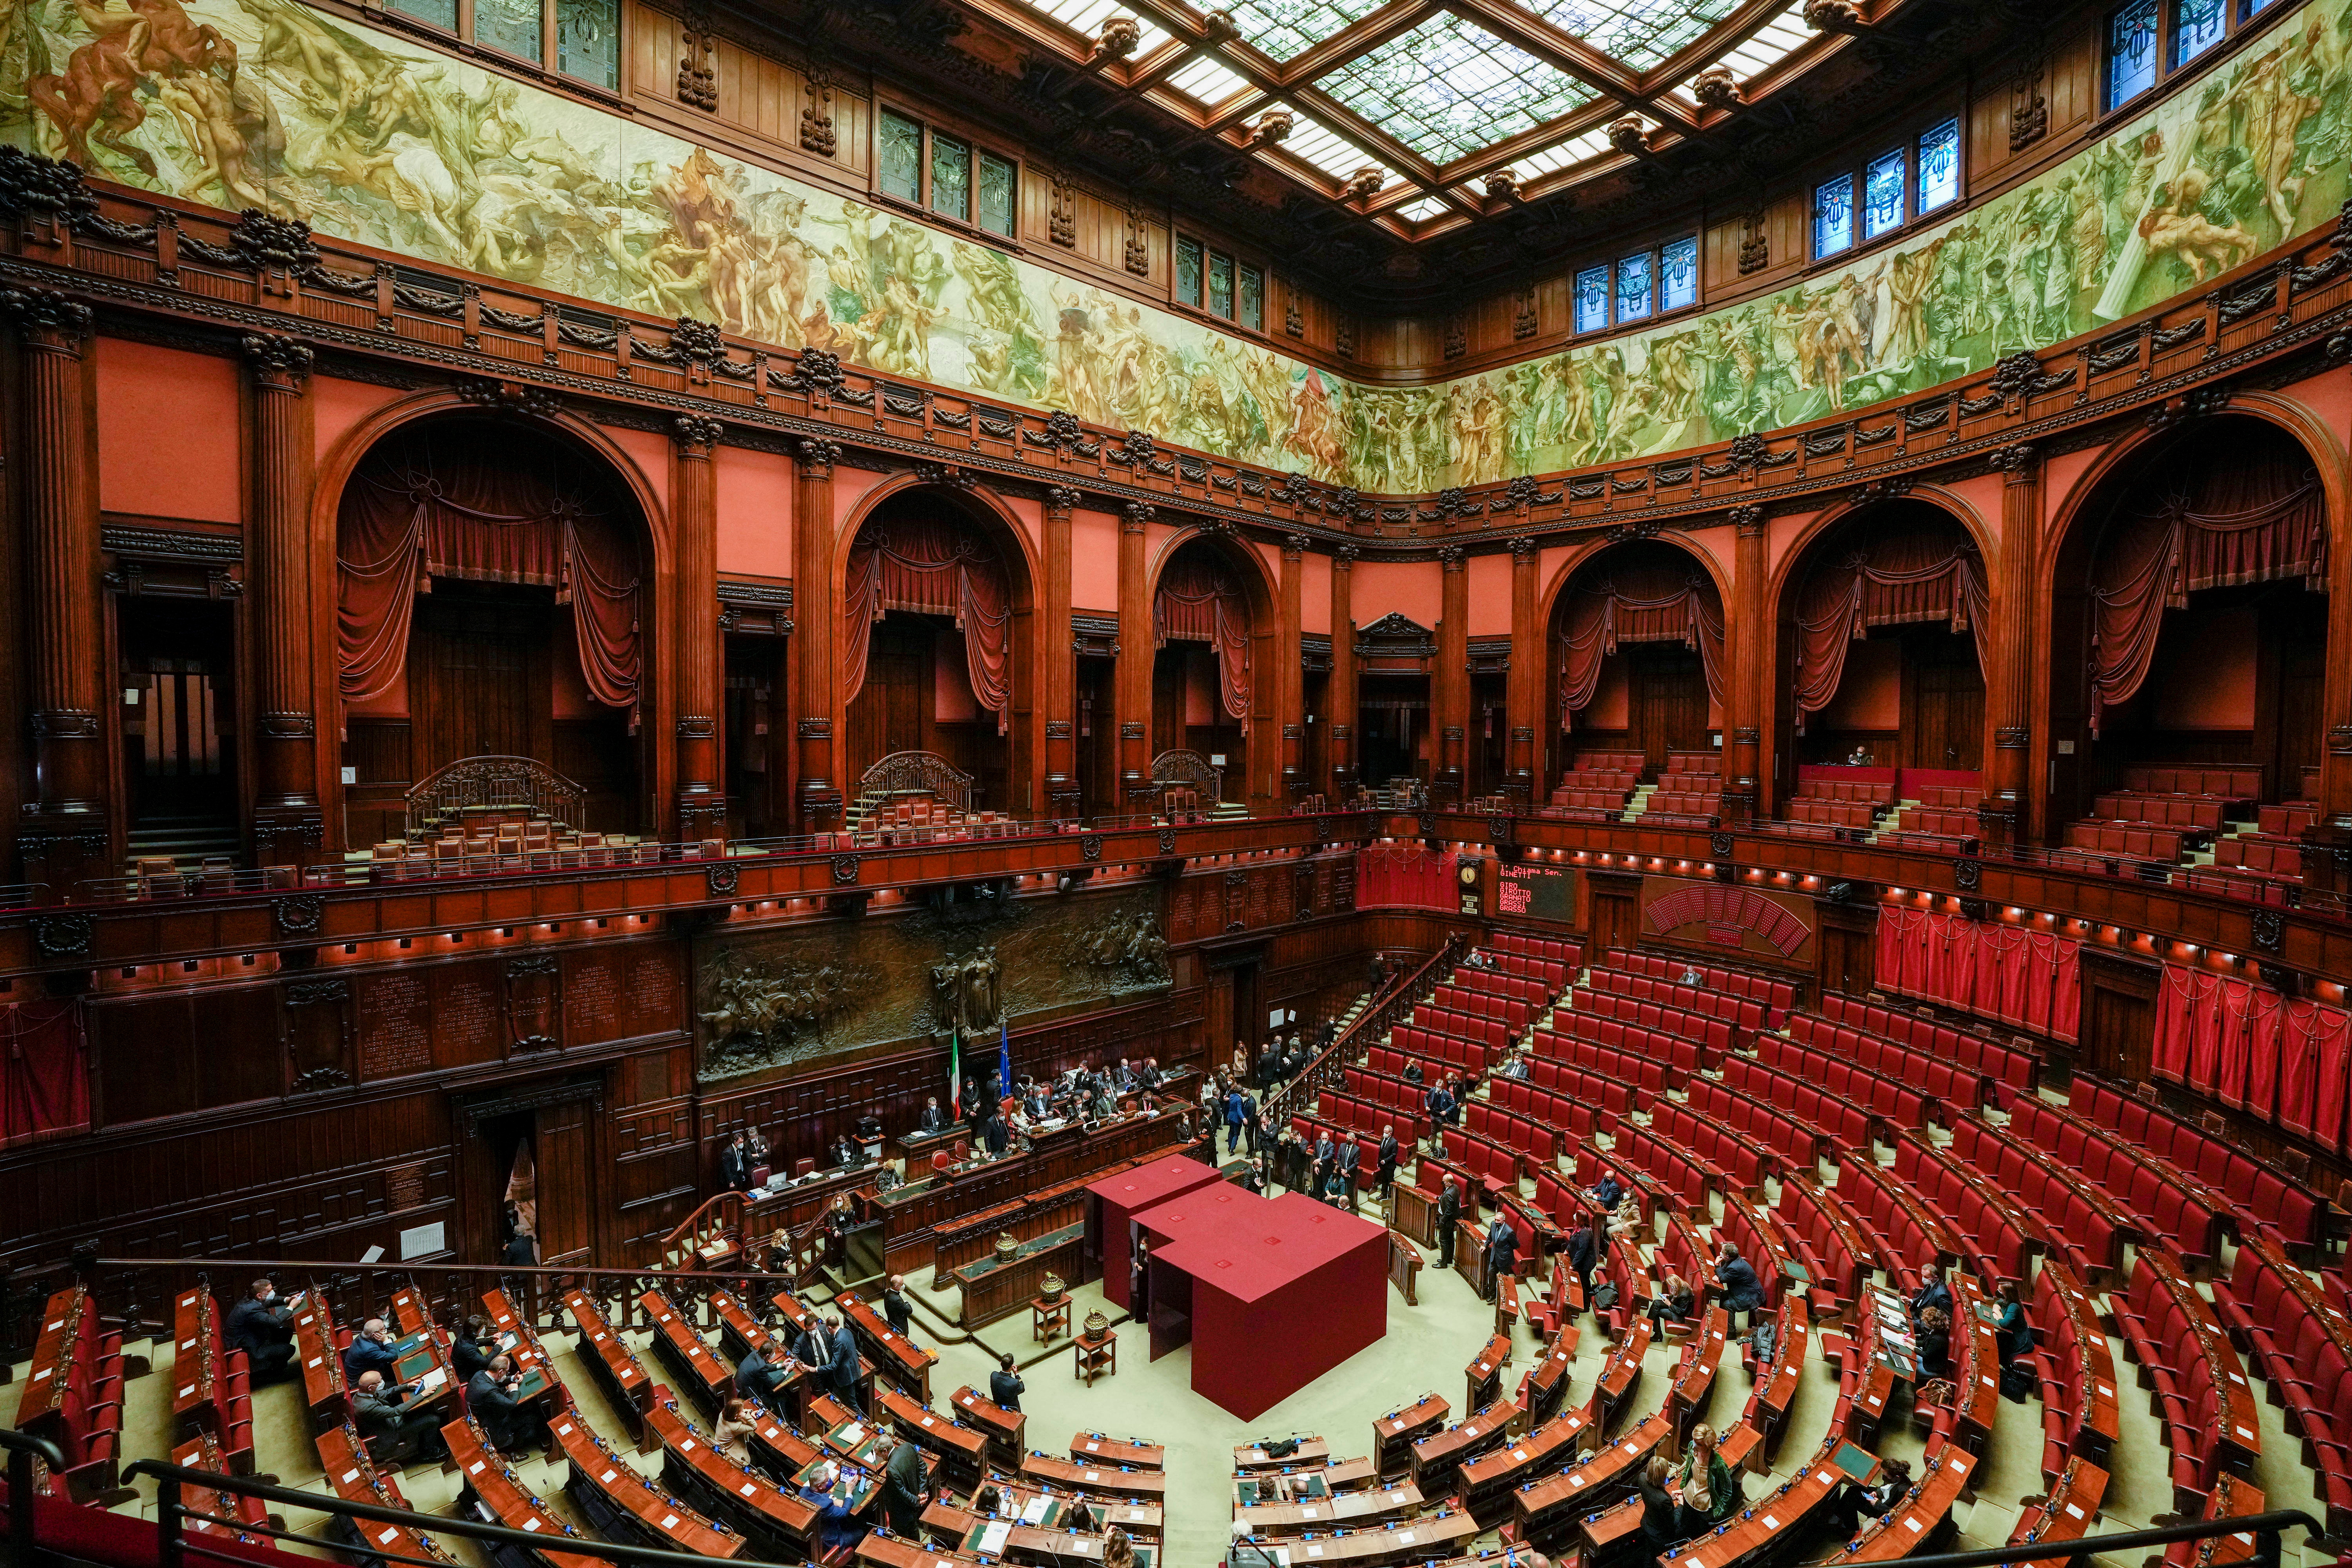 Visione generale del parlamento italiano durante l'ottavo turno di votazioni per eleggere il nuovo presidente d'Italia, a Roma, il 29 gennaio 2022. Gregorio Borgia/Pool via REUTERS